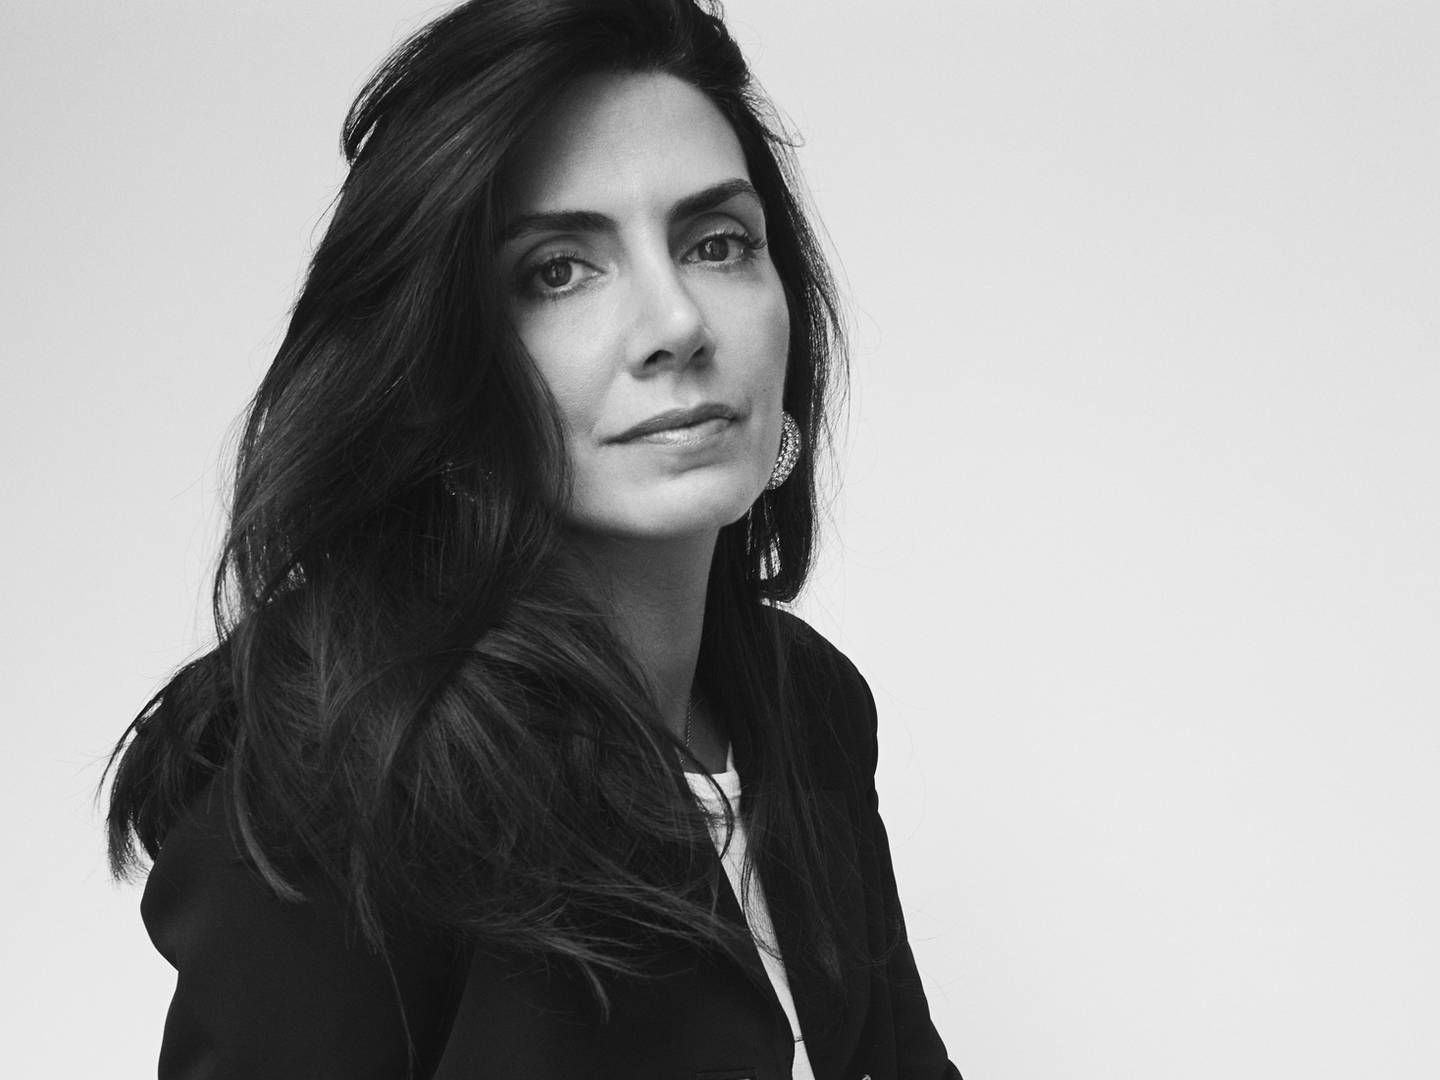 Det danske modebrand hentede i april Laura du Rusquec ind som ny direktør. Hun kommer til at lede Ganni fra modehusets kontor i Paris. | Foto: Ganni